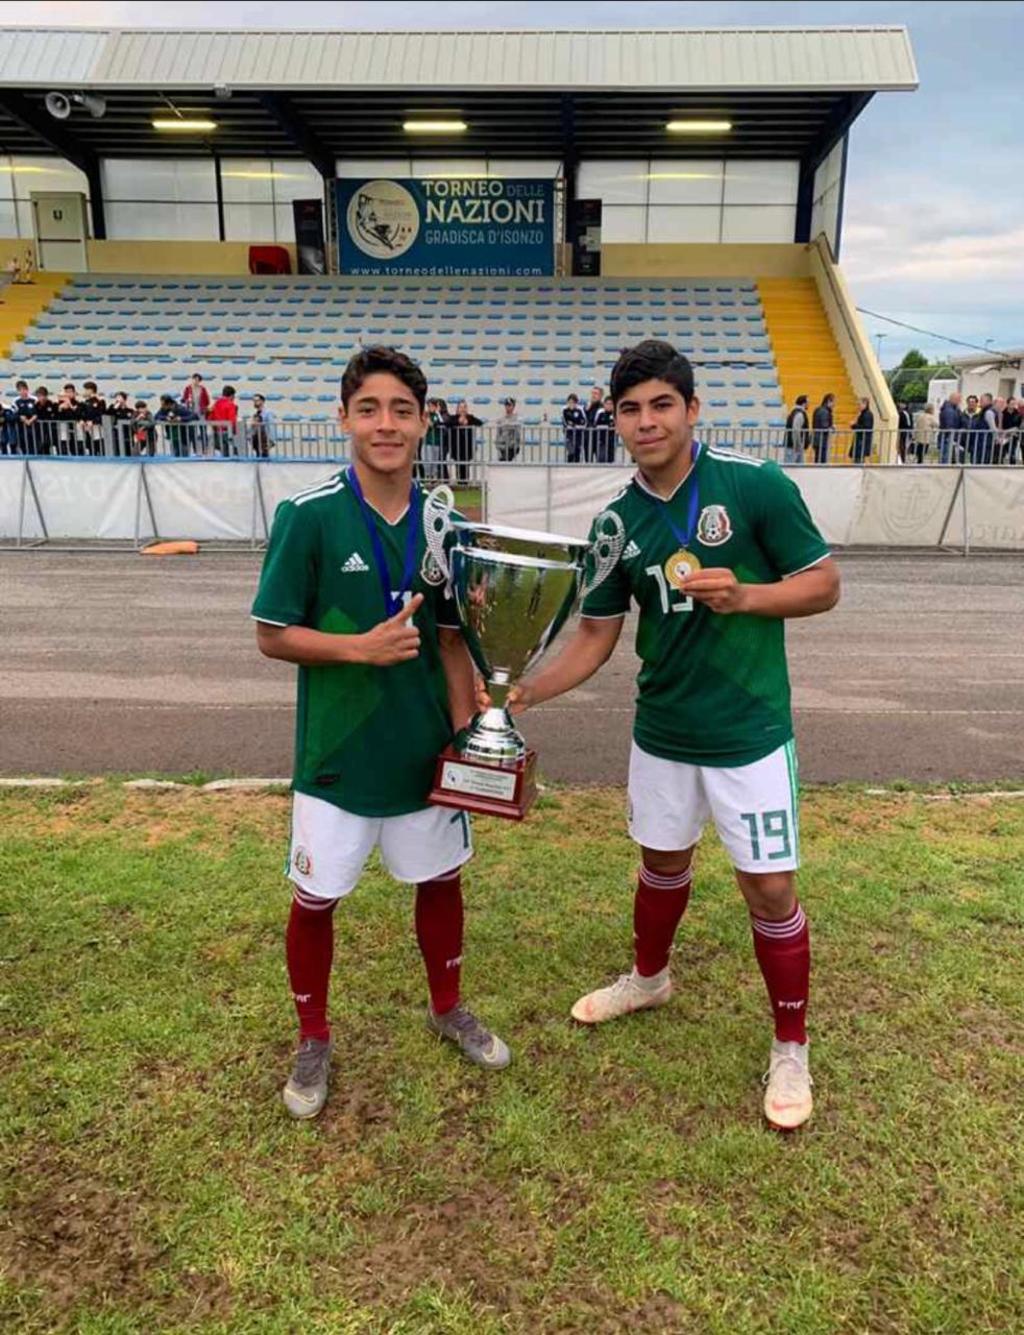 La selección mexicana de futbol sub 15 conquistó el título del Torneo Delle Nazioni Gradisca D’ Isonzo al imponerse por marcador de 2-1 a Japón en la final de este certamen. (ESPECIAL)